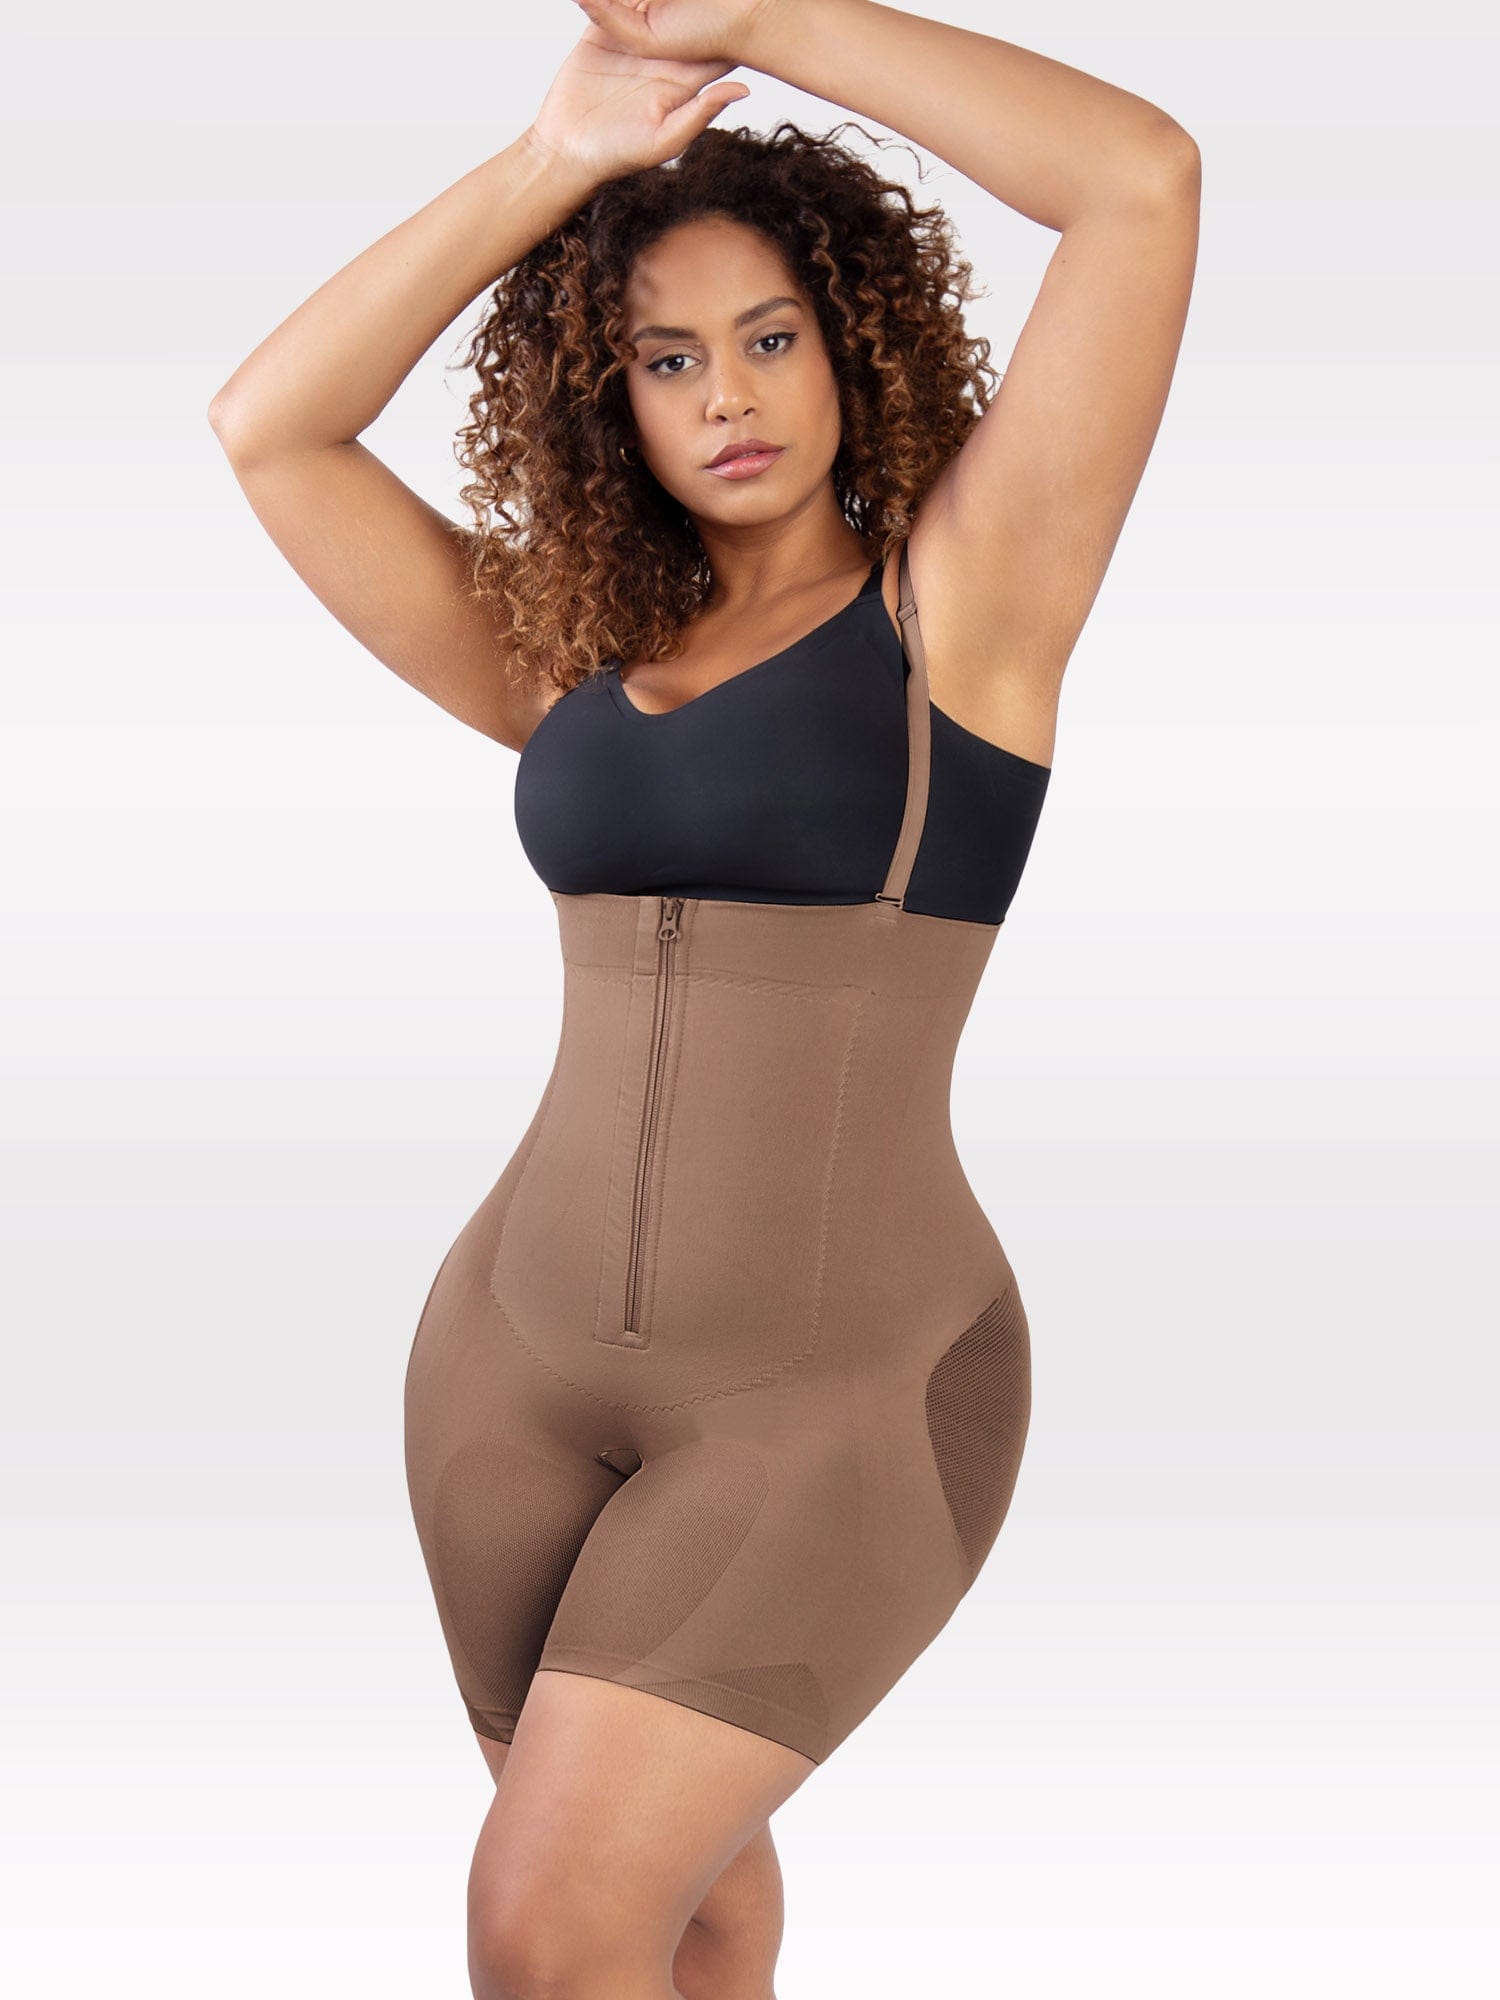 Hexin Leather Bodysuit for Women Tummy Control - Shapewear